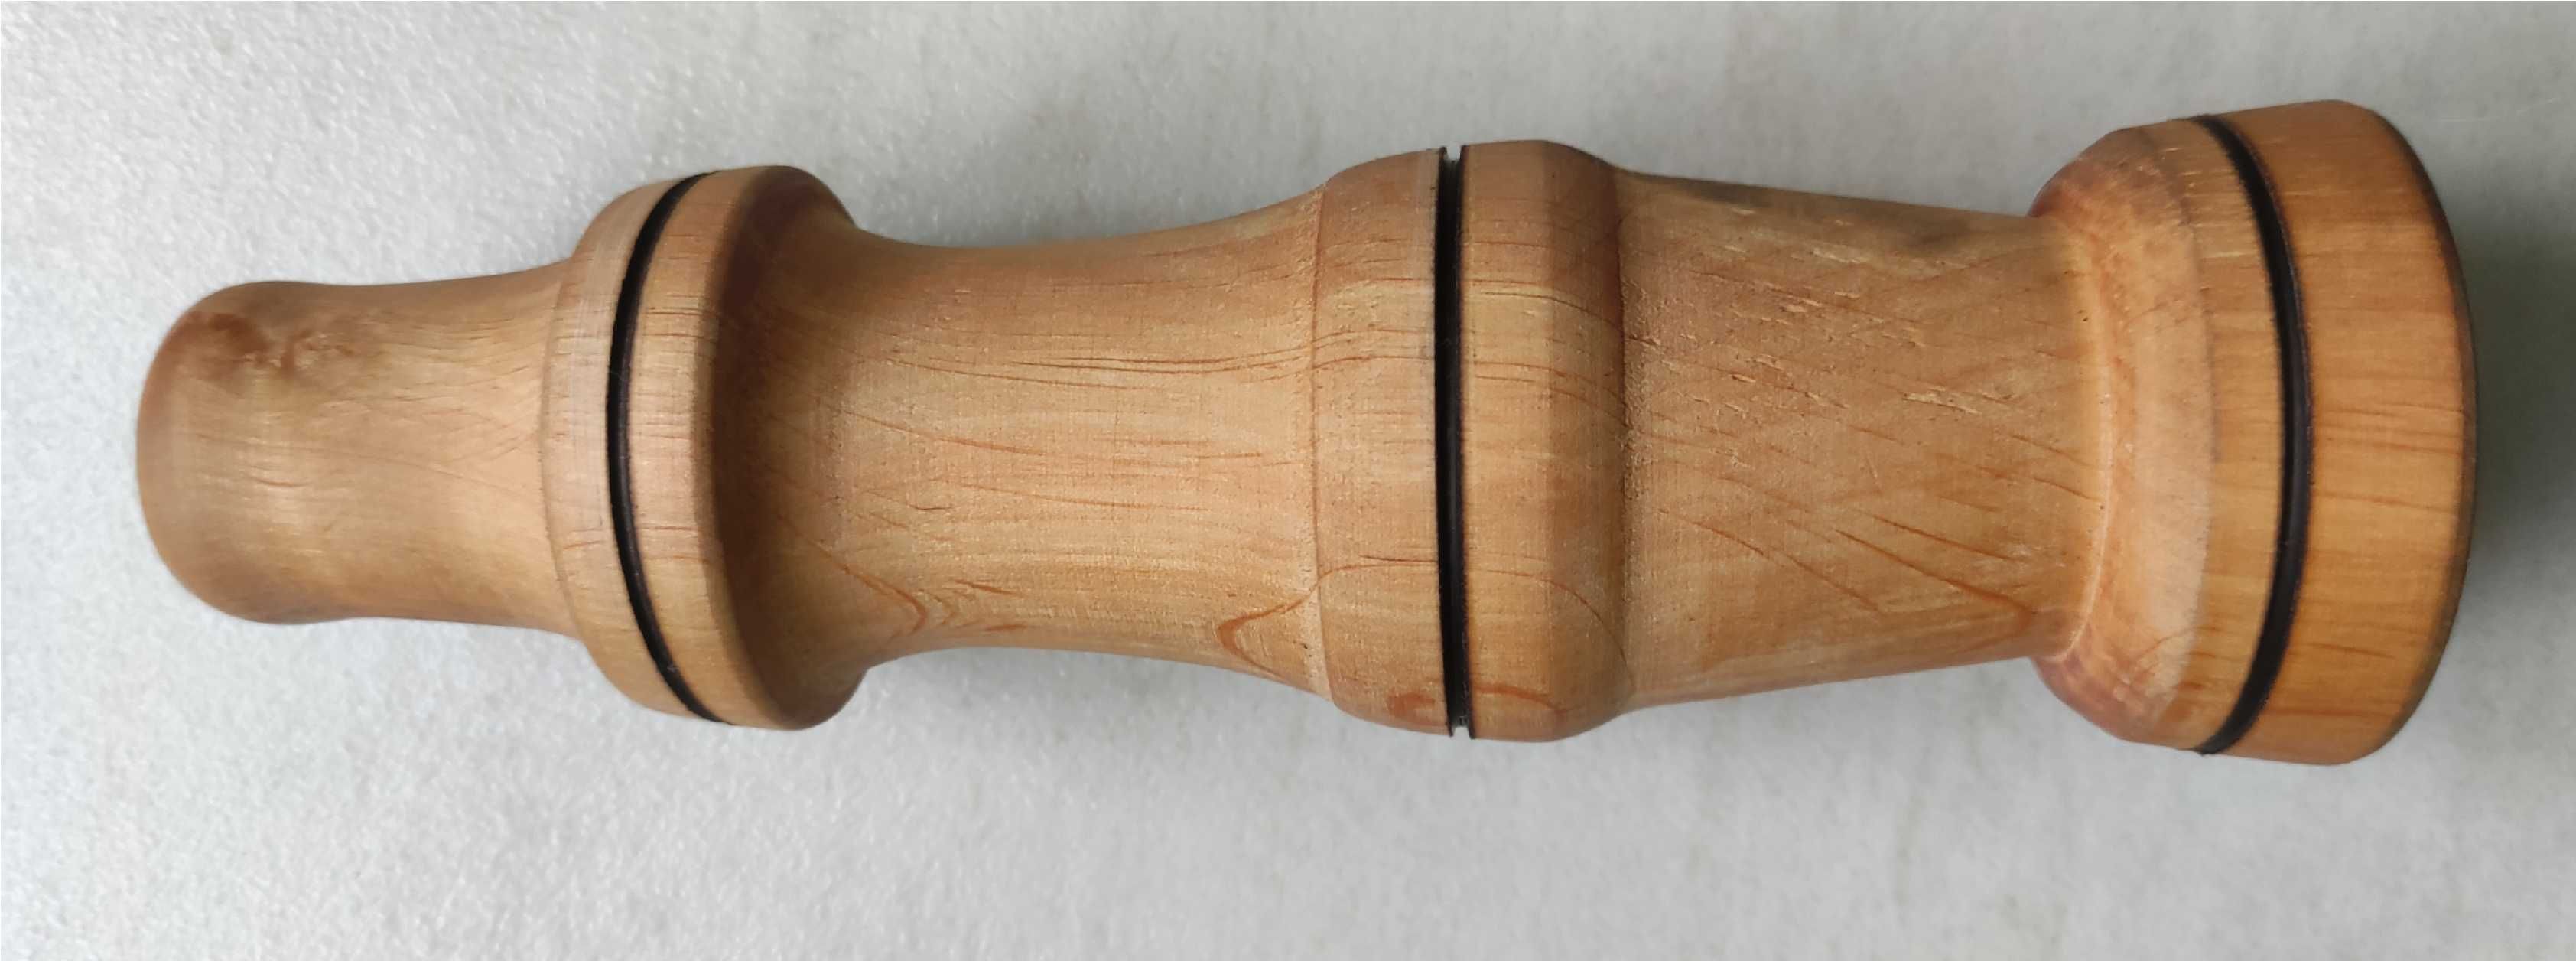 Świecznik wykonany z drewna olchowego - wysokość 21,5 cm